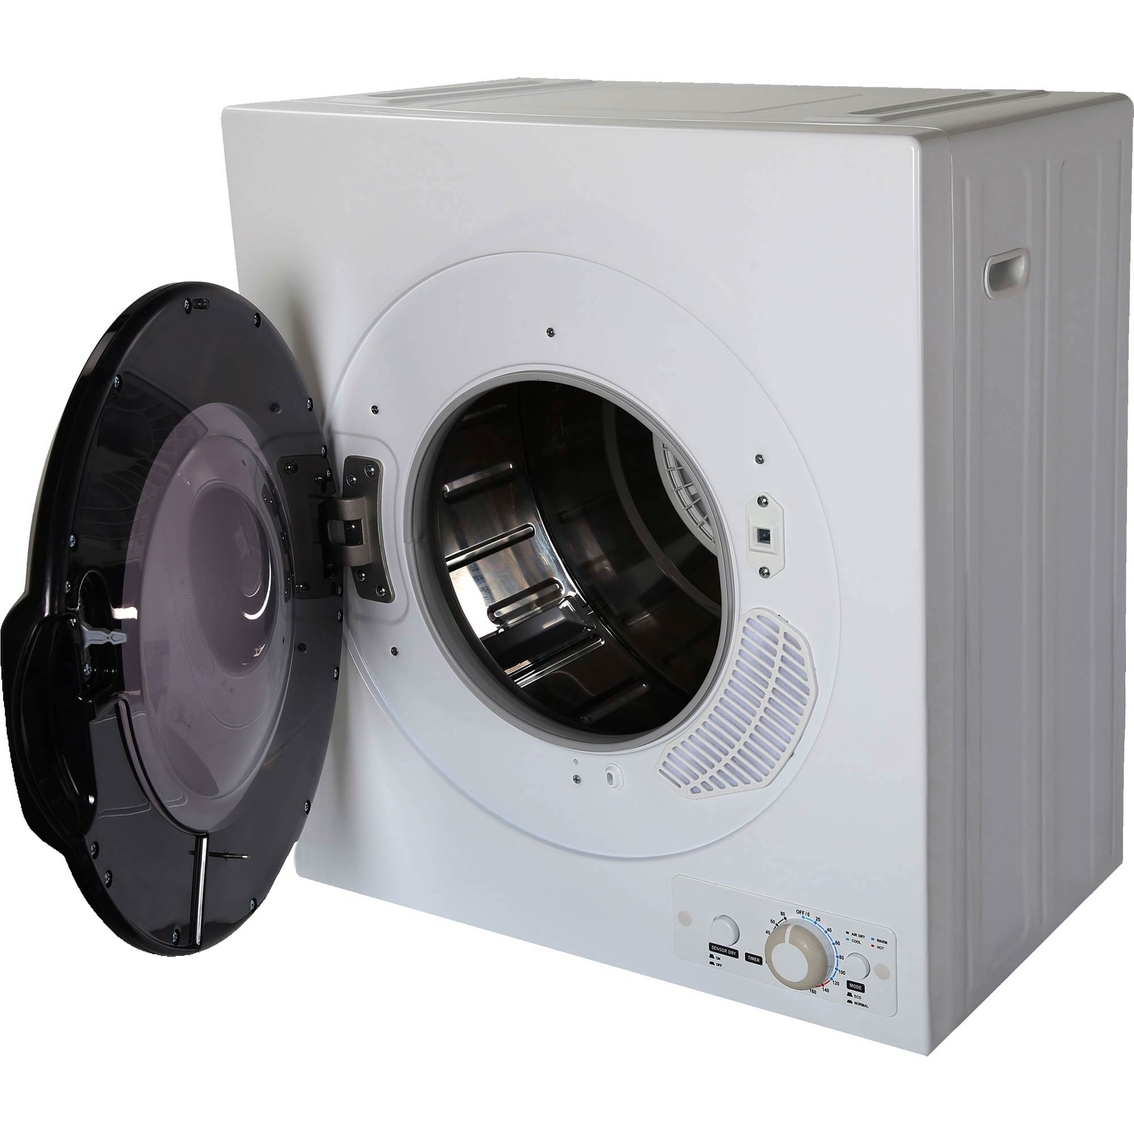 Black + Decker 3.5 cu. ft. Portable Dryer 120V - Image 4 of 10